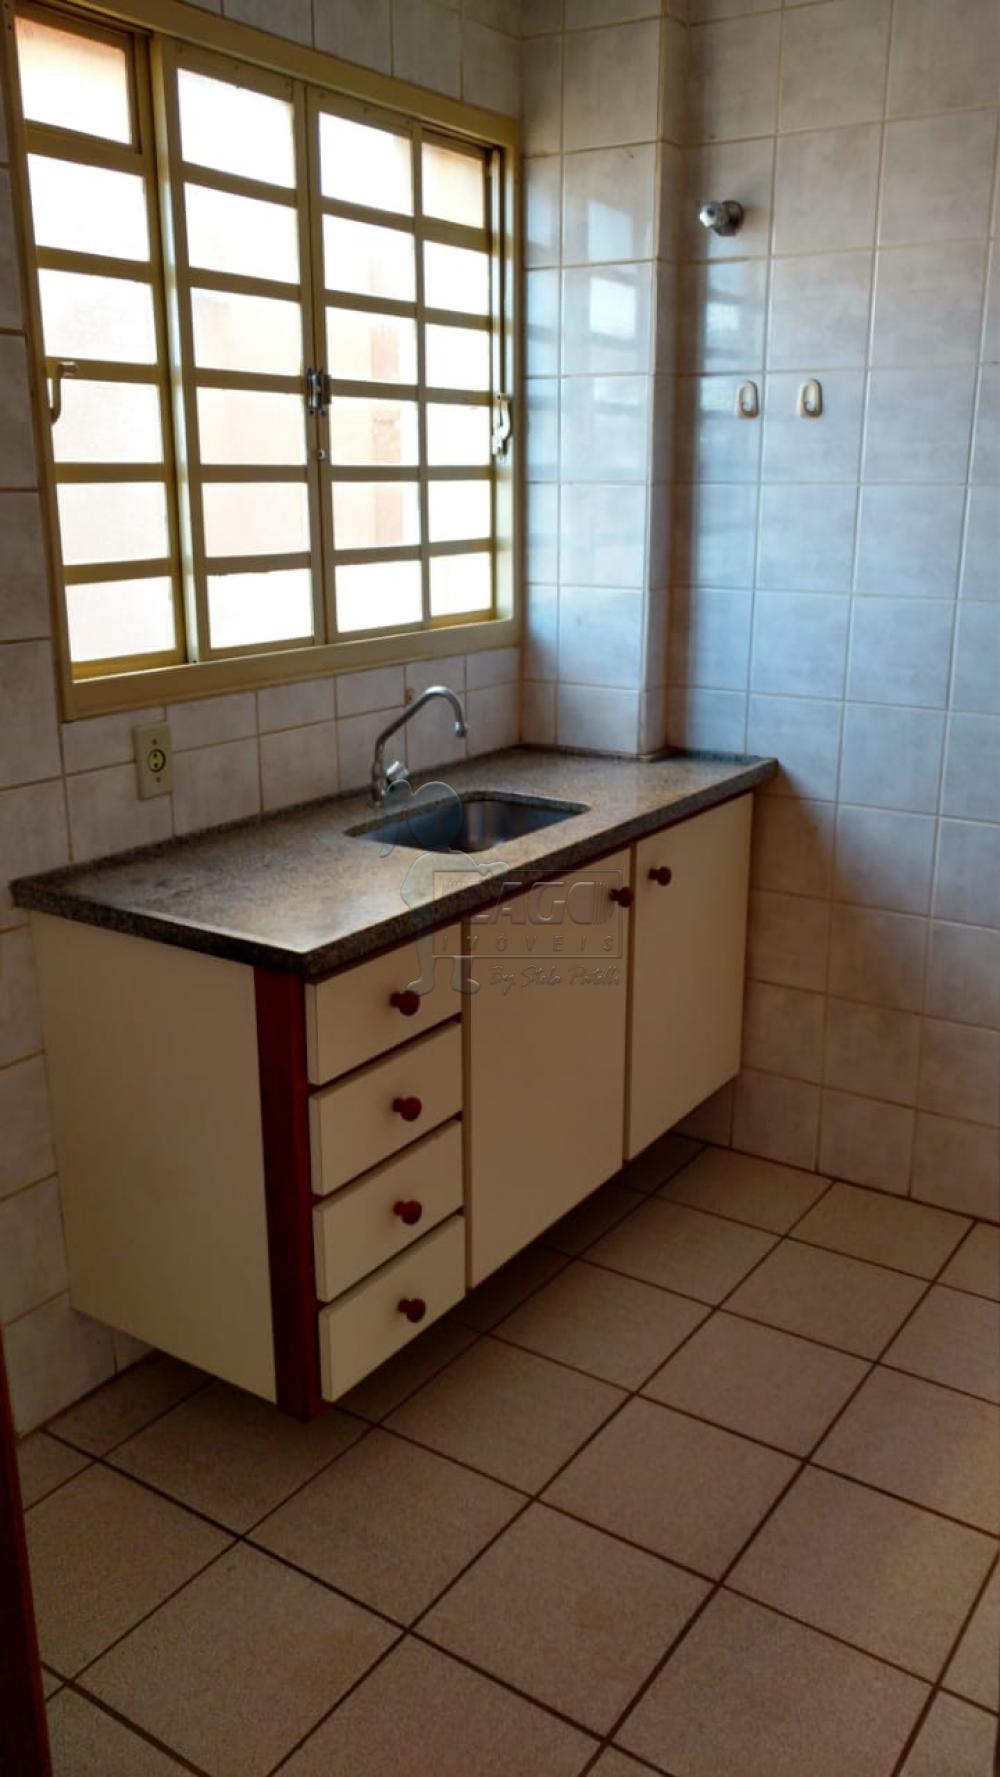 Alugar Apartamentos / Padrão em Ribeirão Preto R$ 500,00 - Foto 10